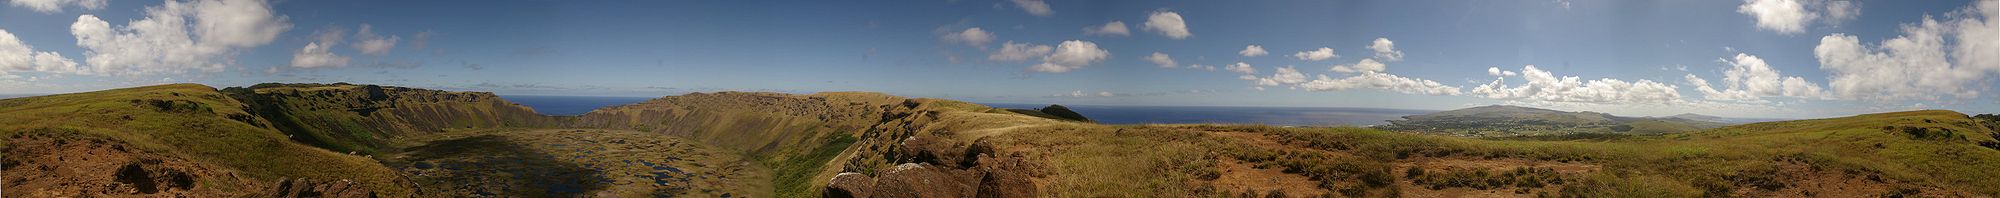 Панорама острова Пасхи с границы кратера Рано-Као